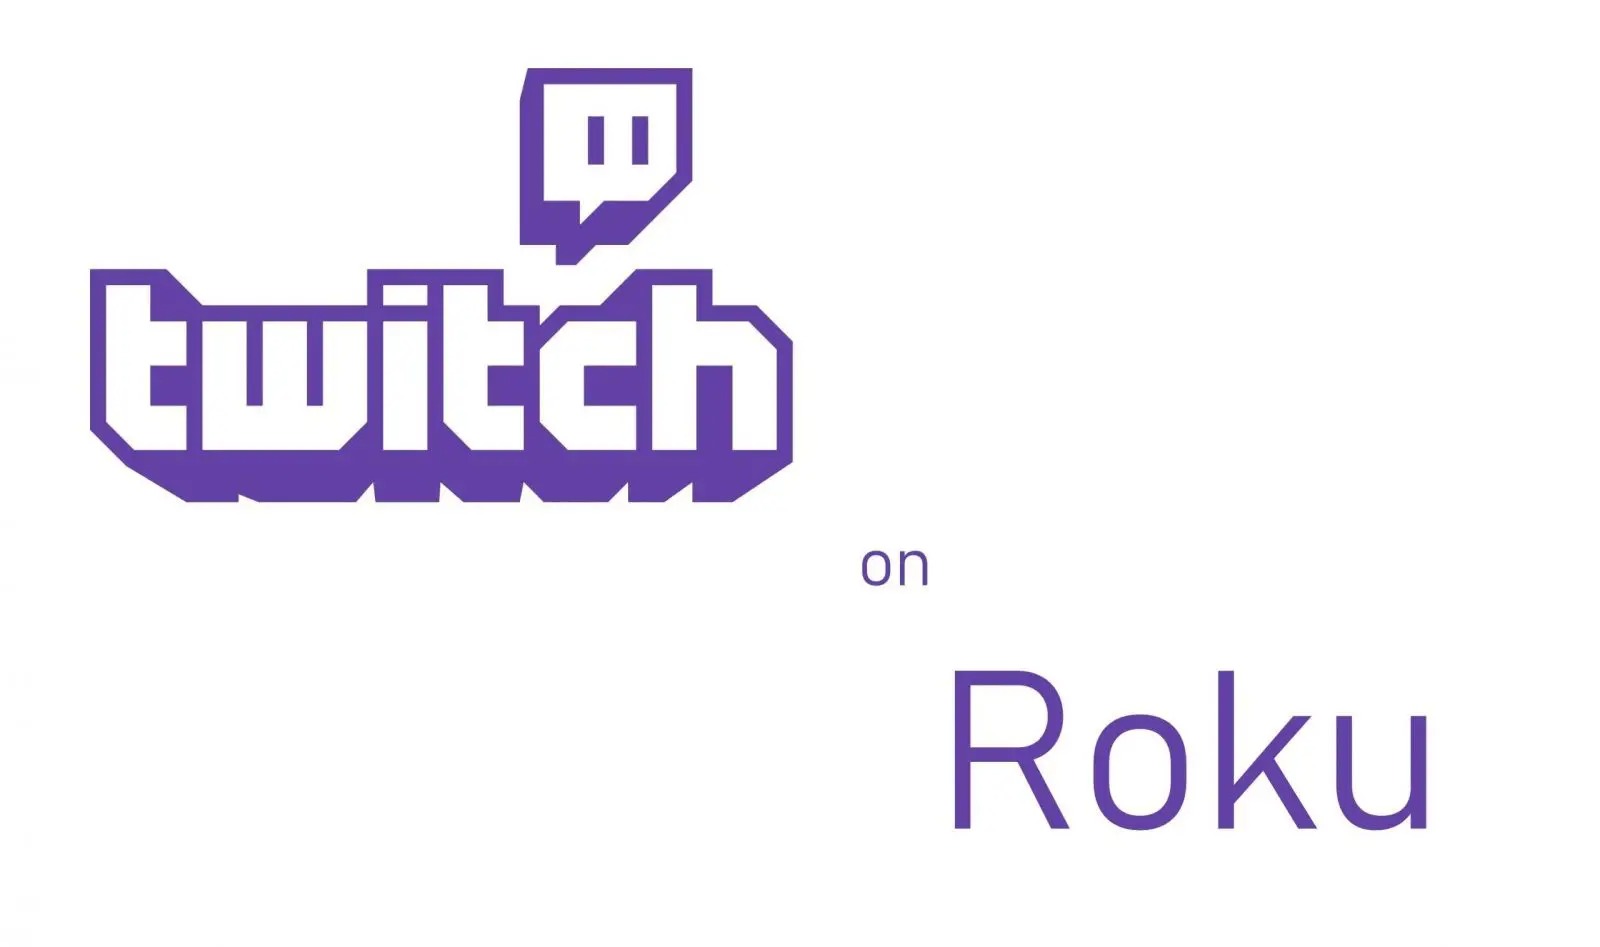 How To Watch Twitch On Roku